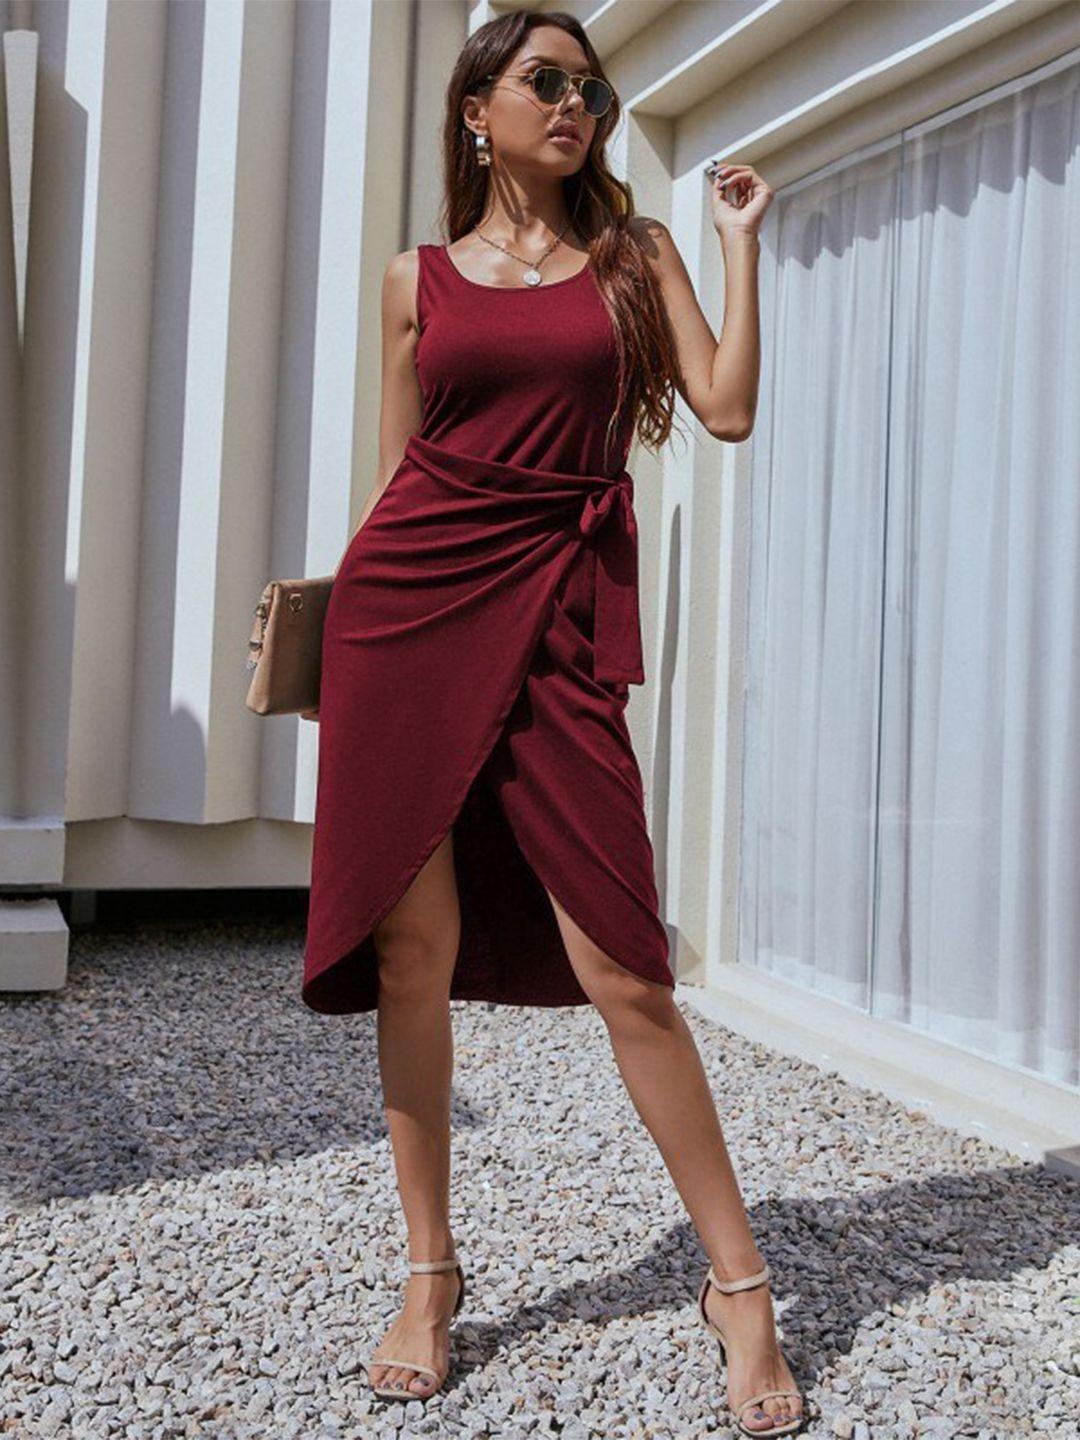 stylecast women maroon wrap dress